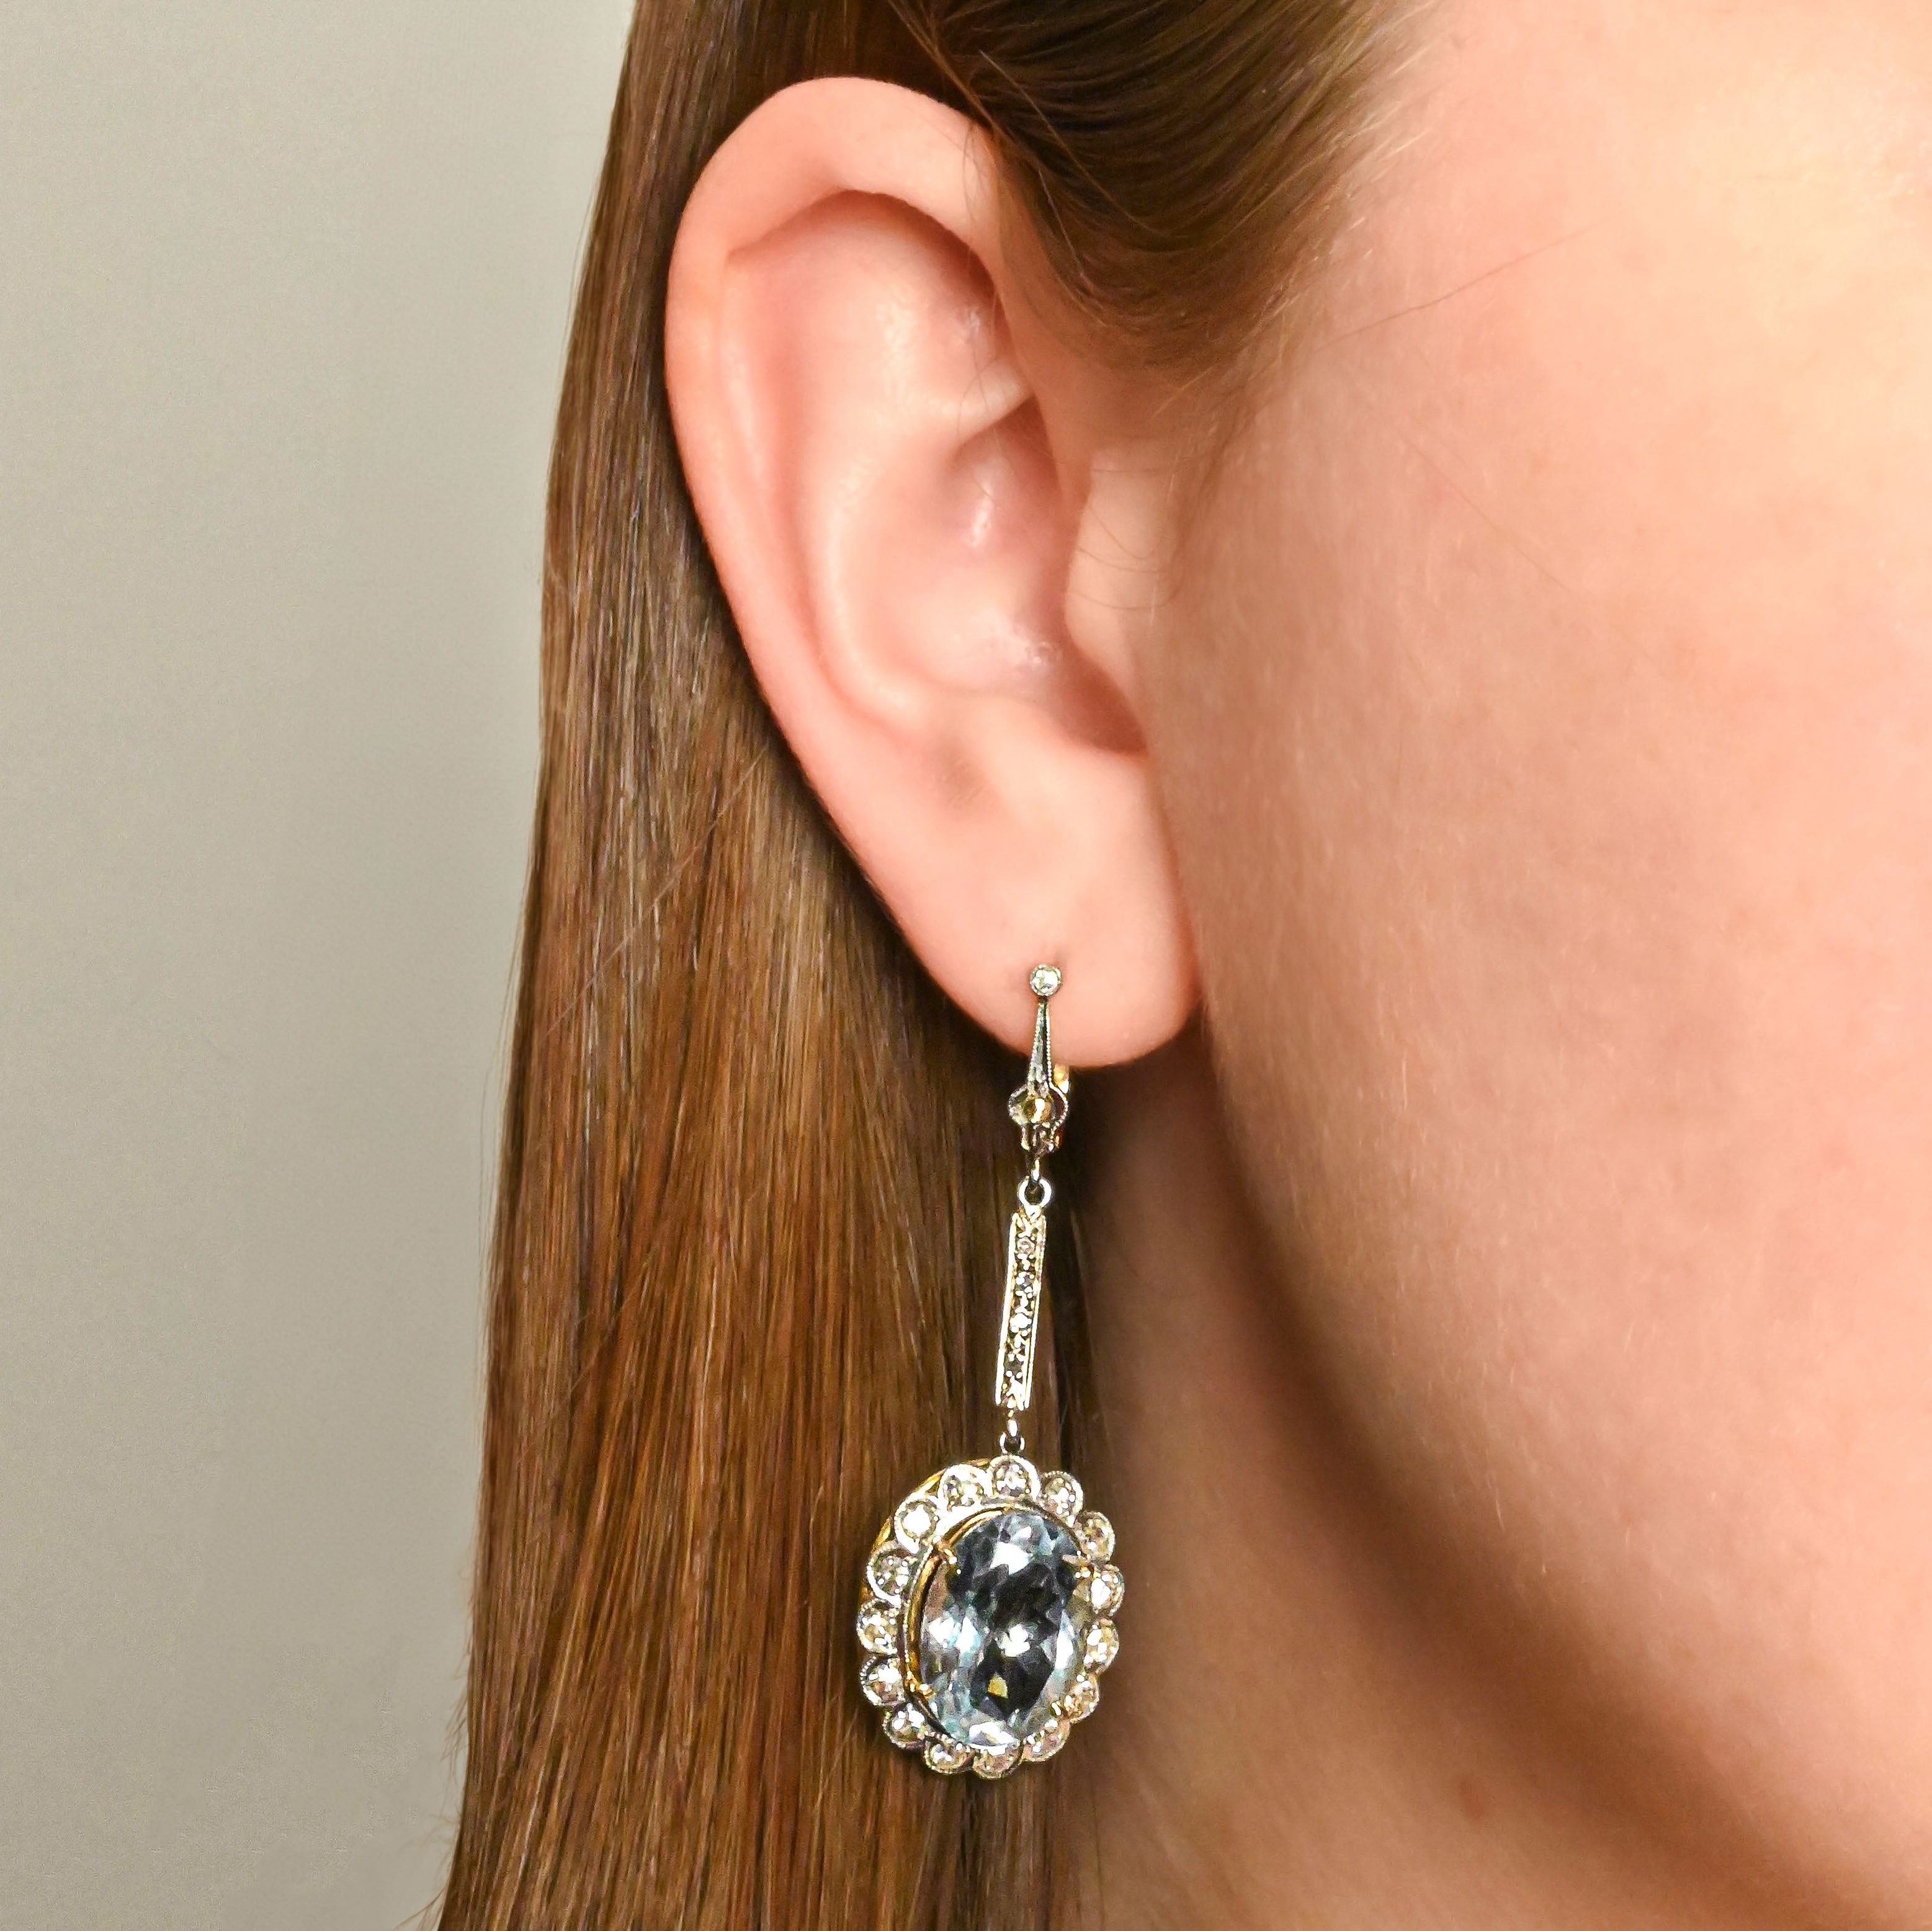 Vintage Diamond and Aquamarine Drop Earrings